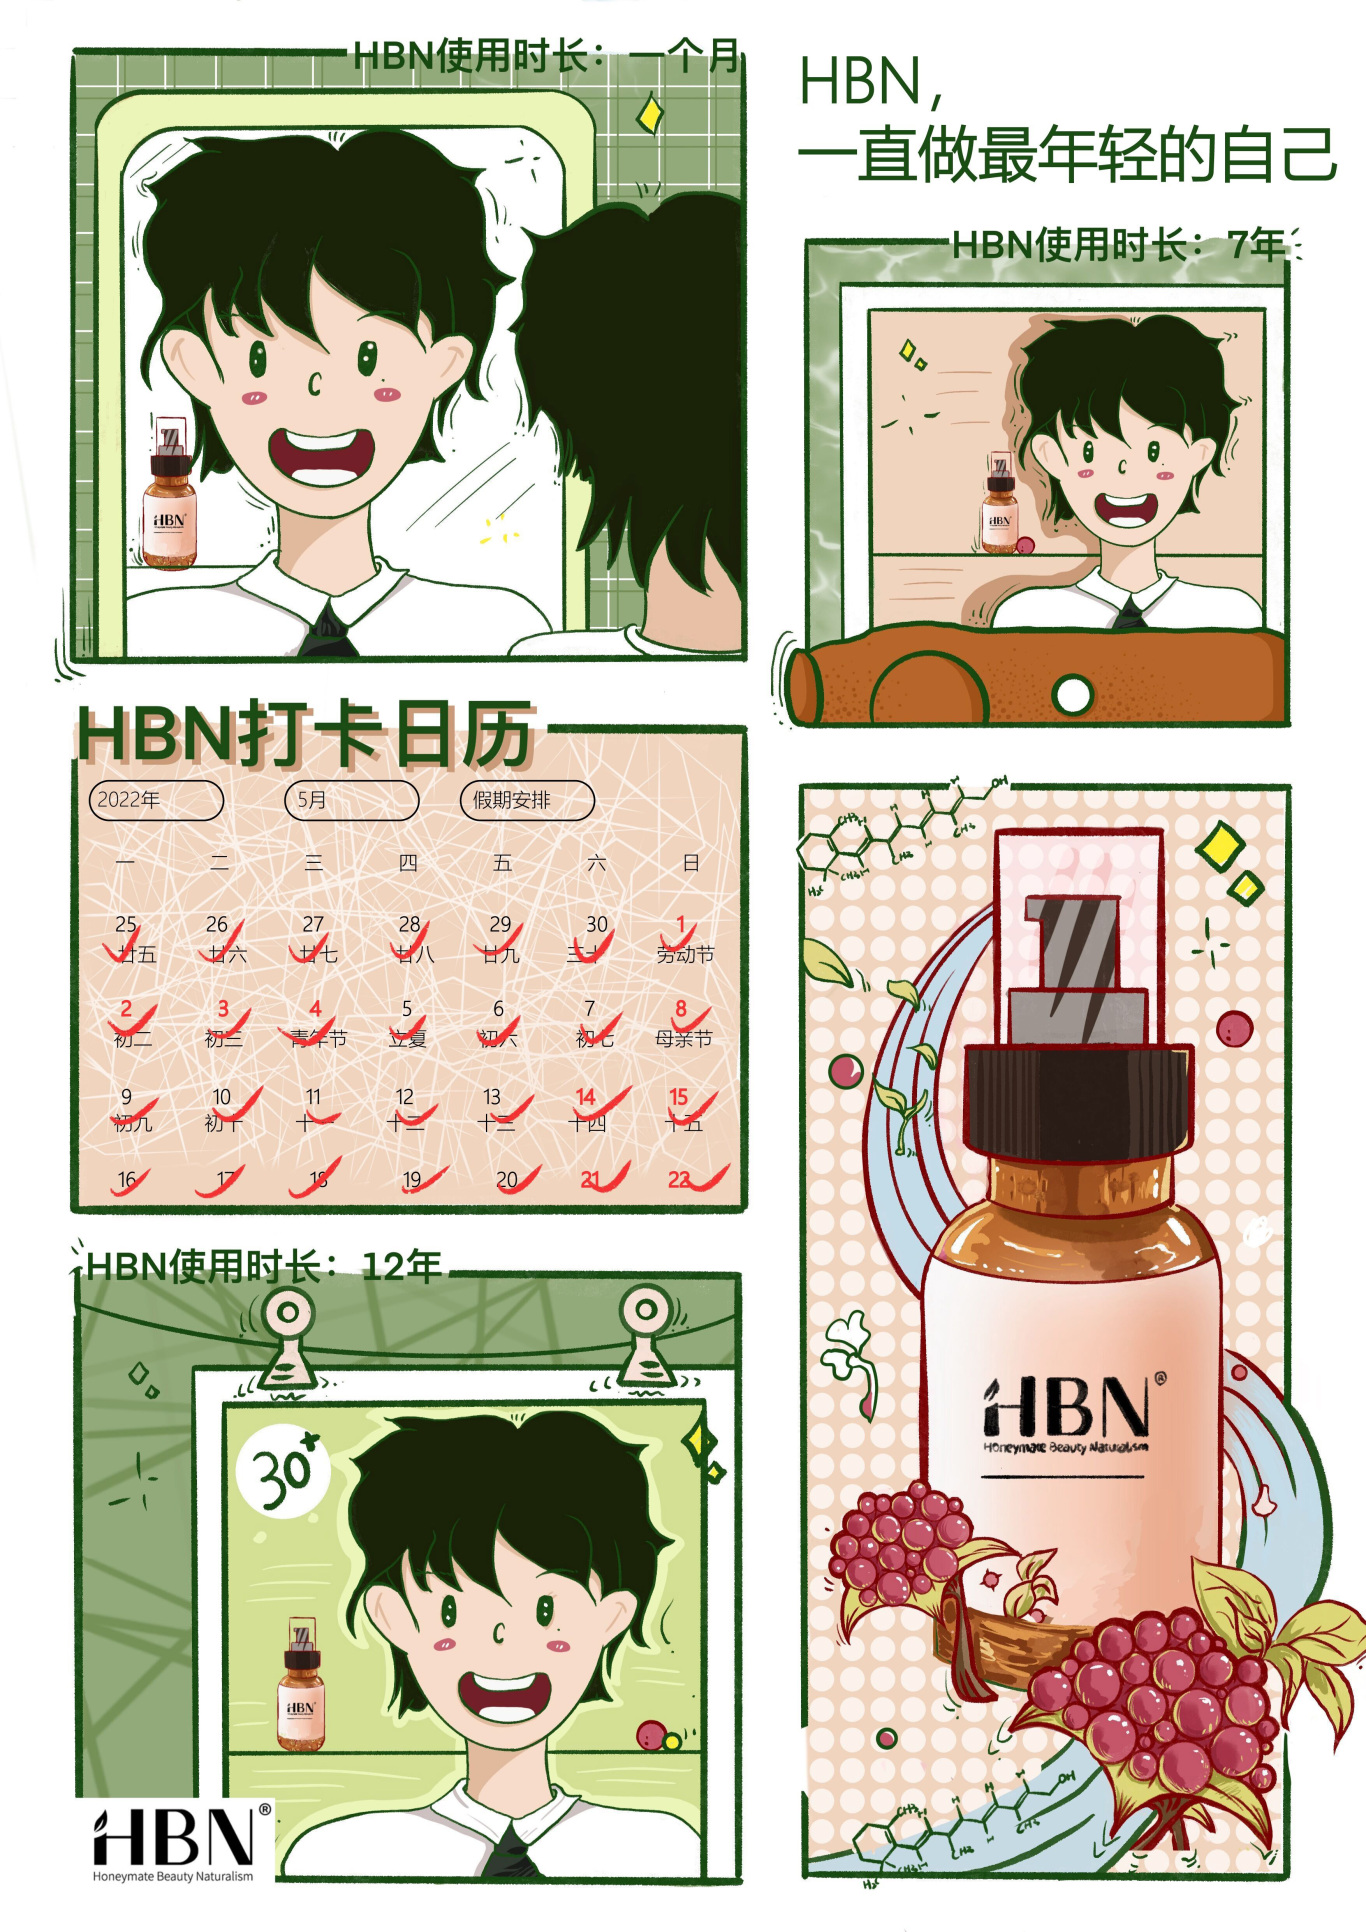 HBN品牌插画海报设计图0